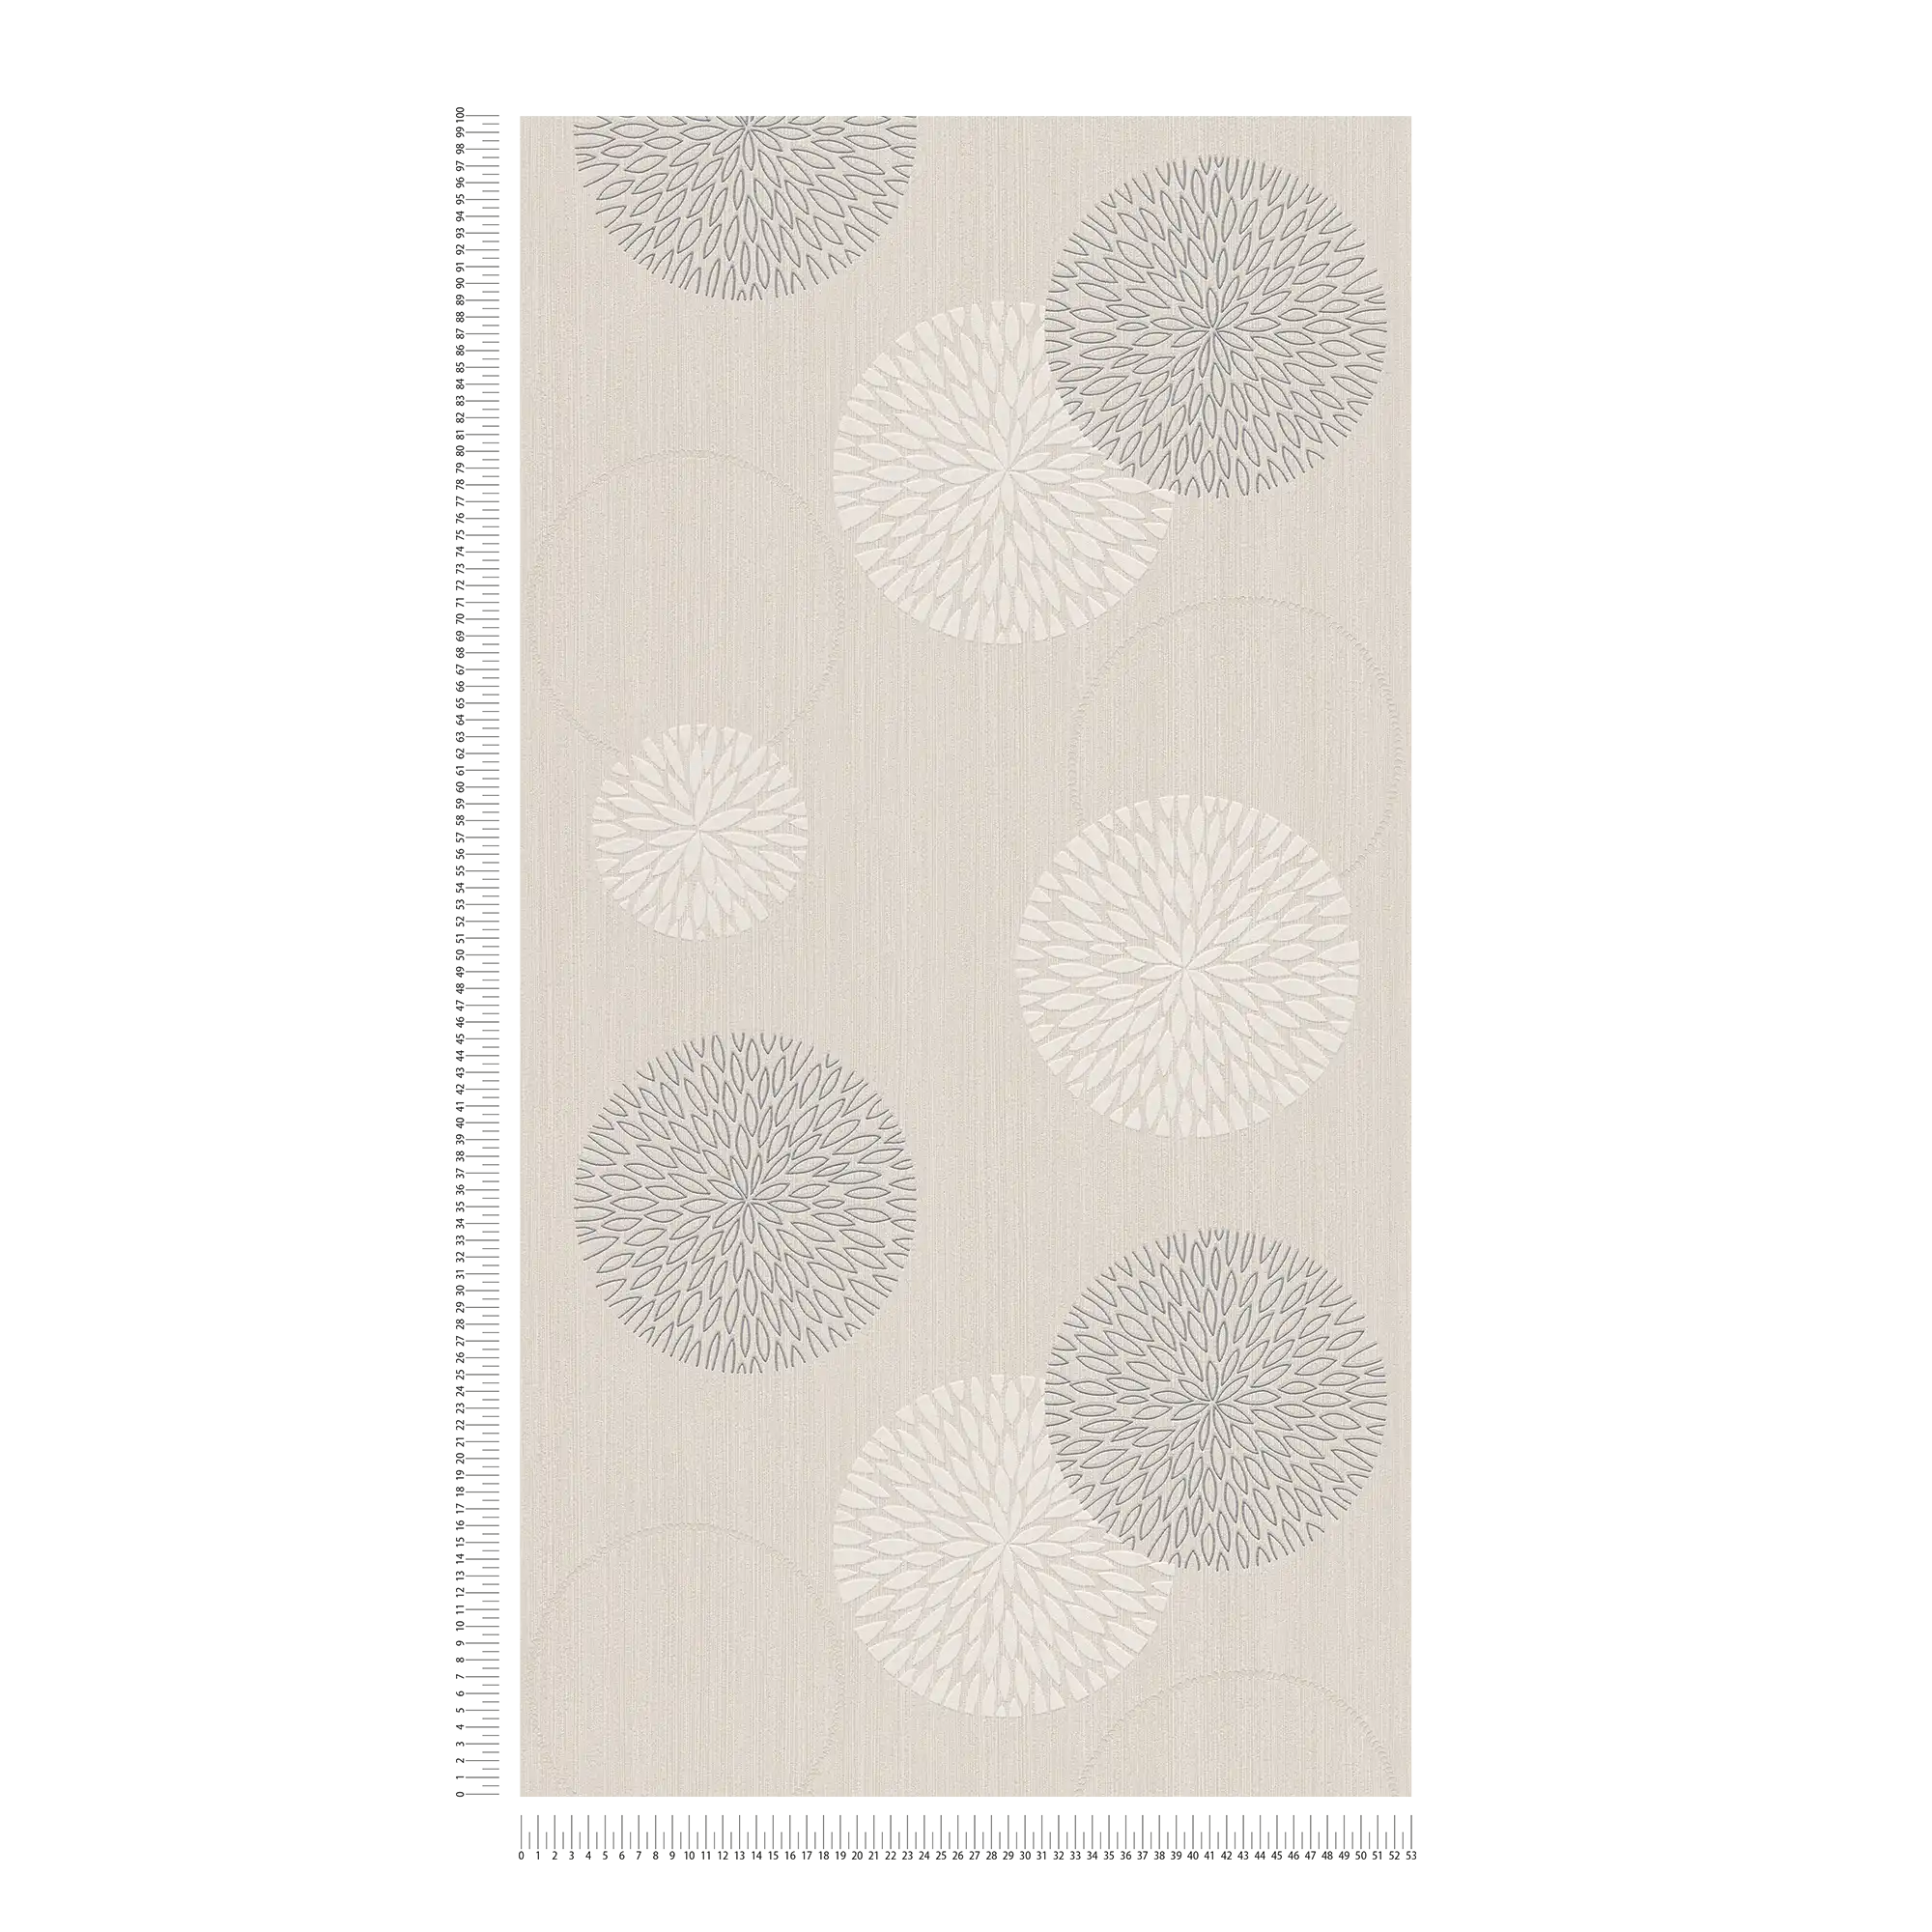             Carta da parati in tessuto non tessuto con disegno floreale astratto - beige, metallizzato
        